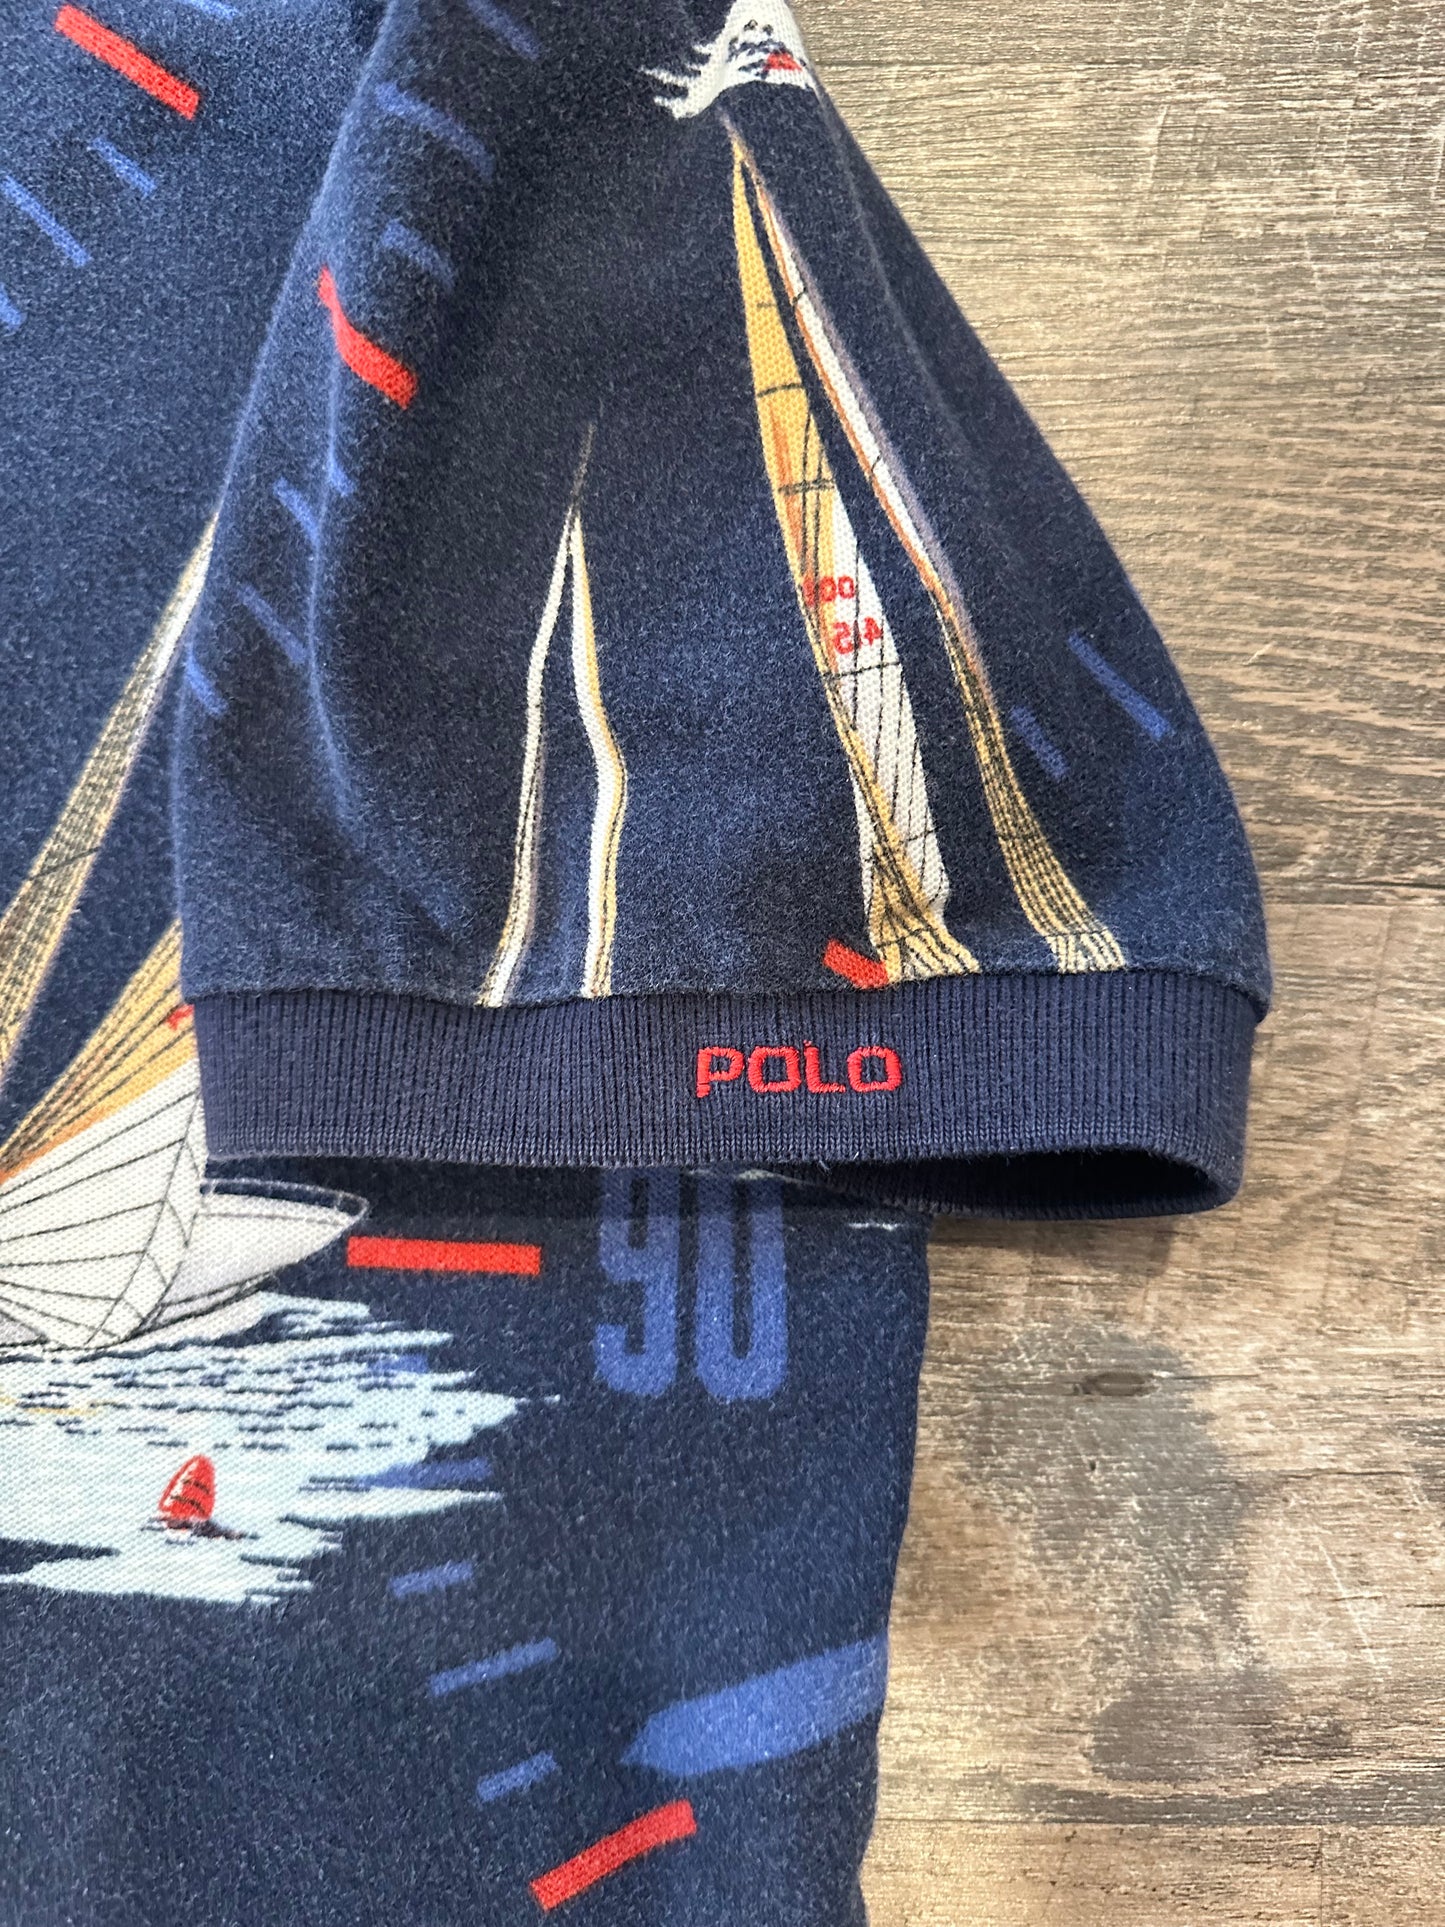 Polo Sport Ralph Lauren Sailing Shirt